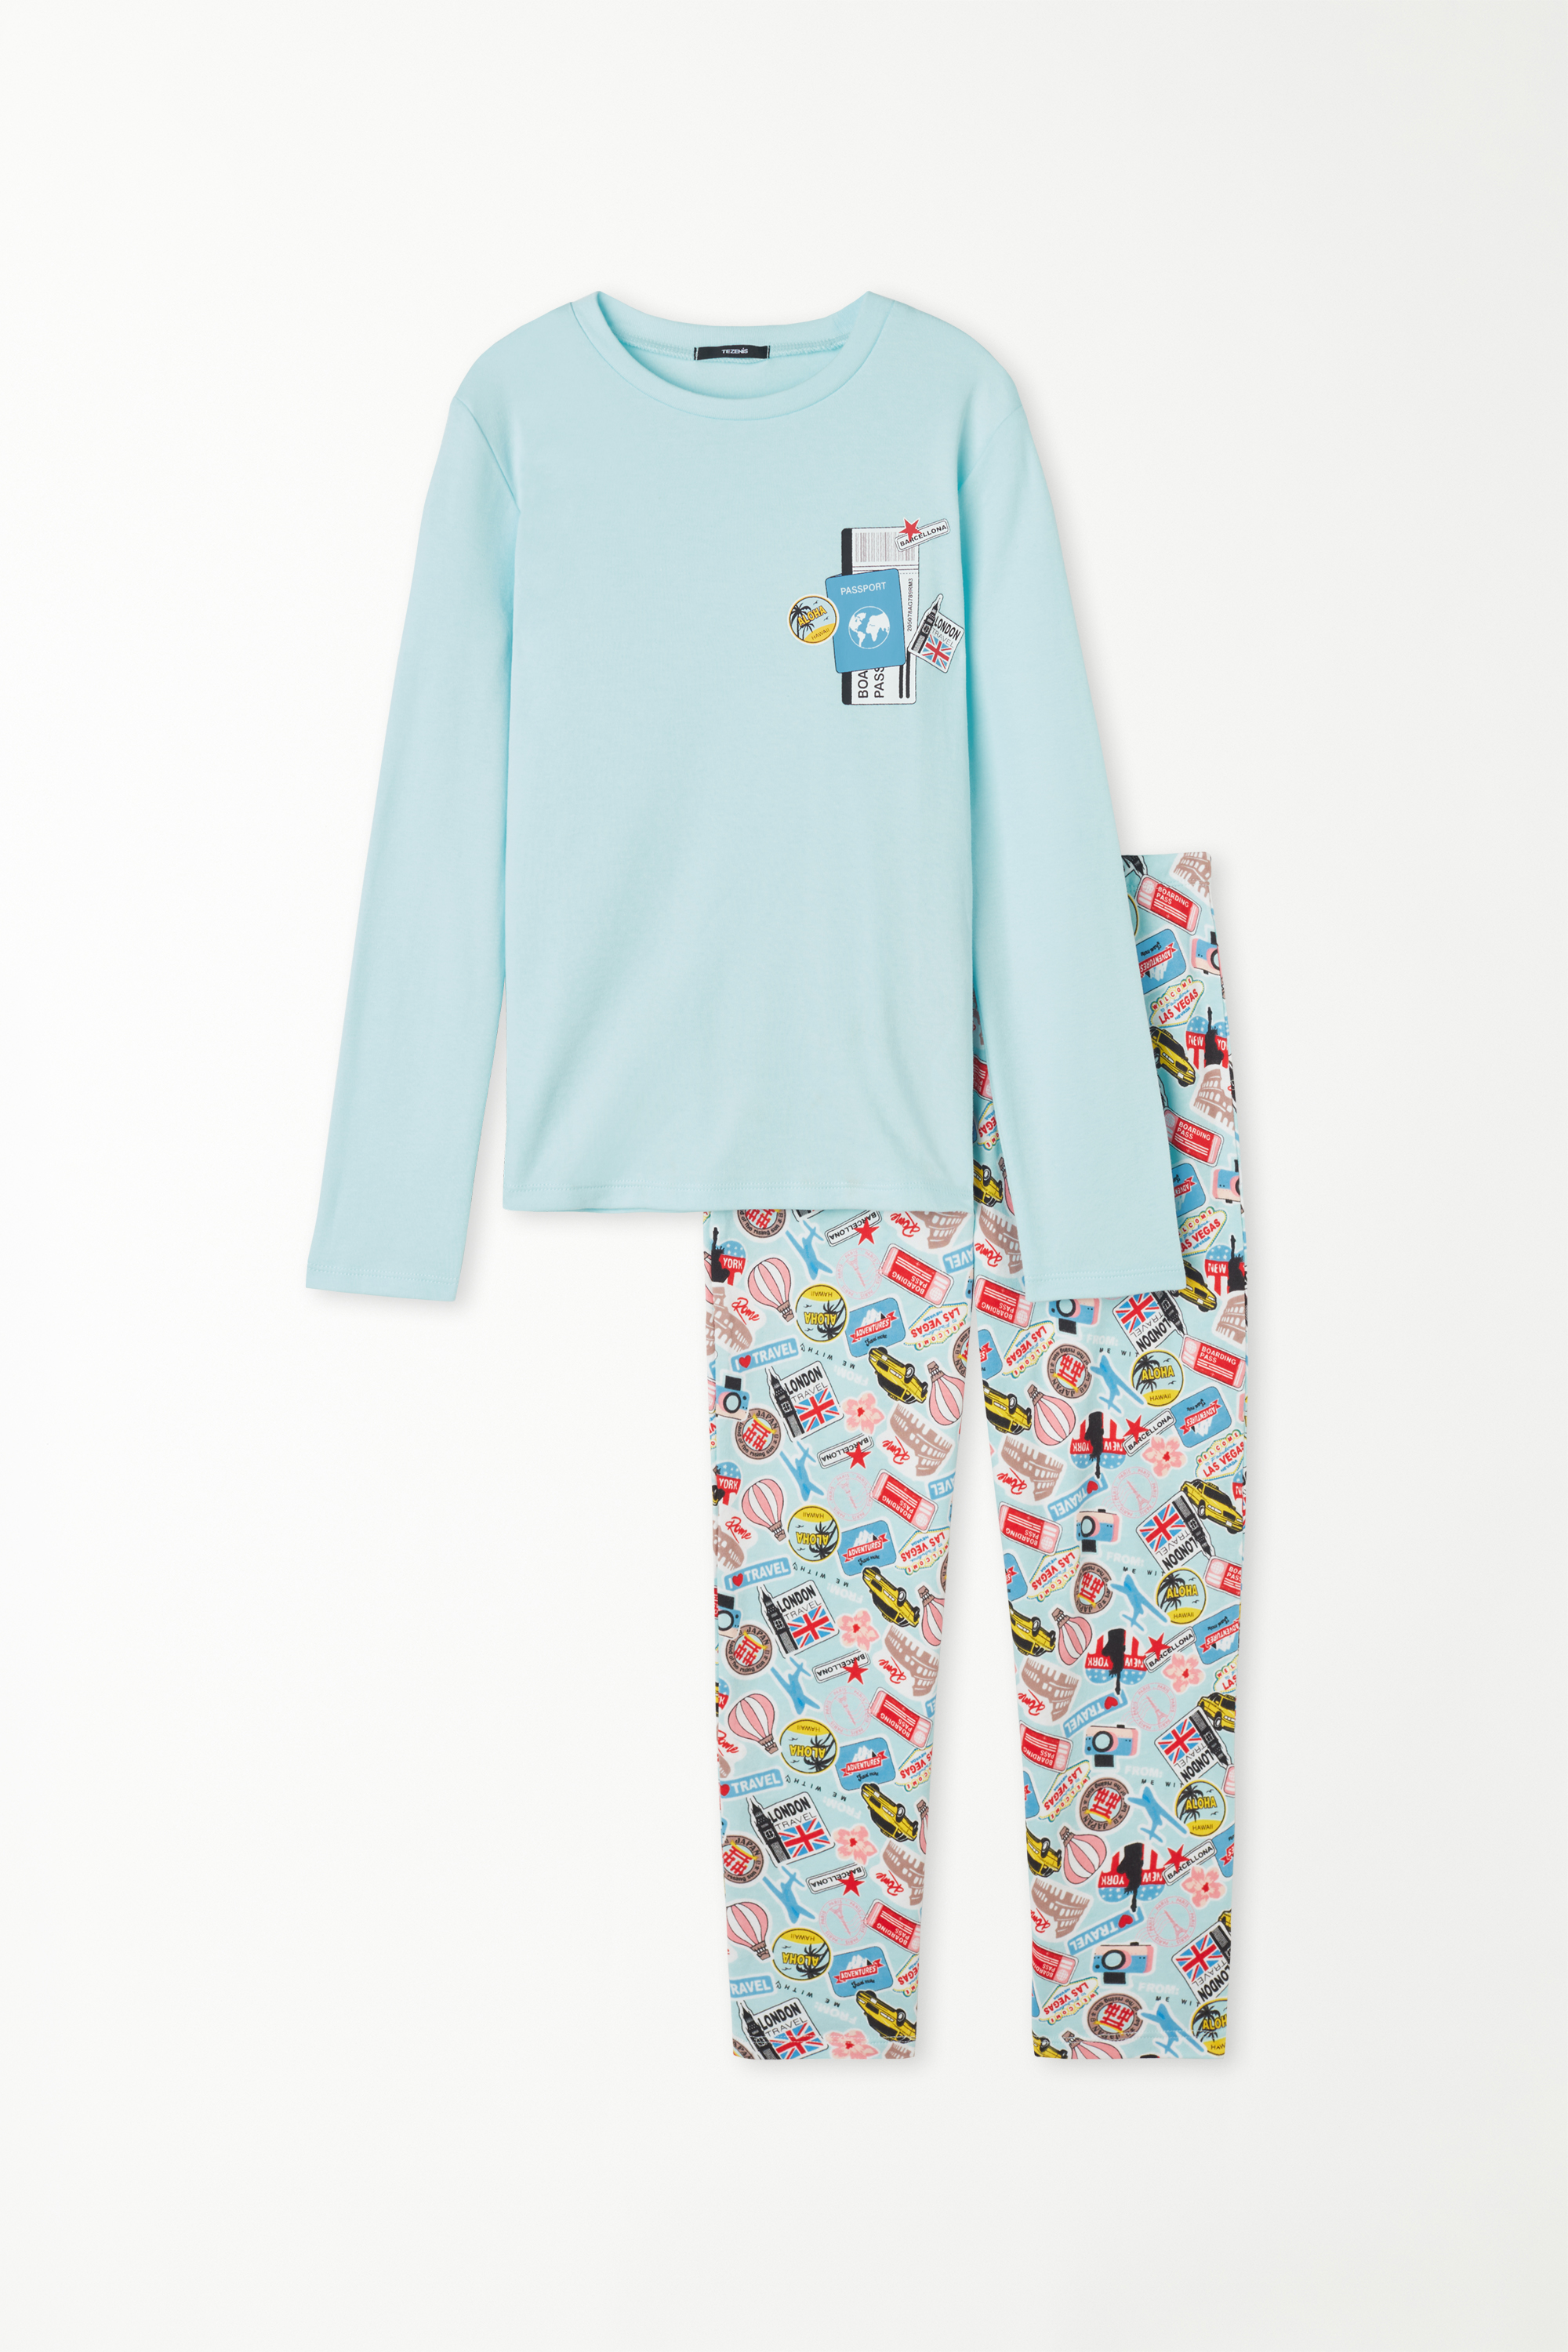 Pyjama Long Fille Coton Épais Imprimé Passeport